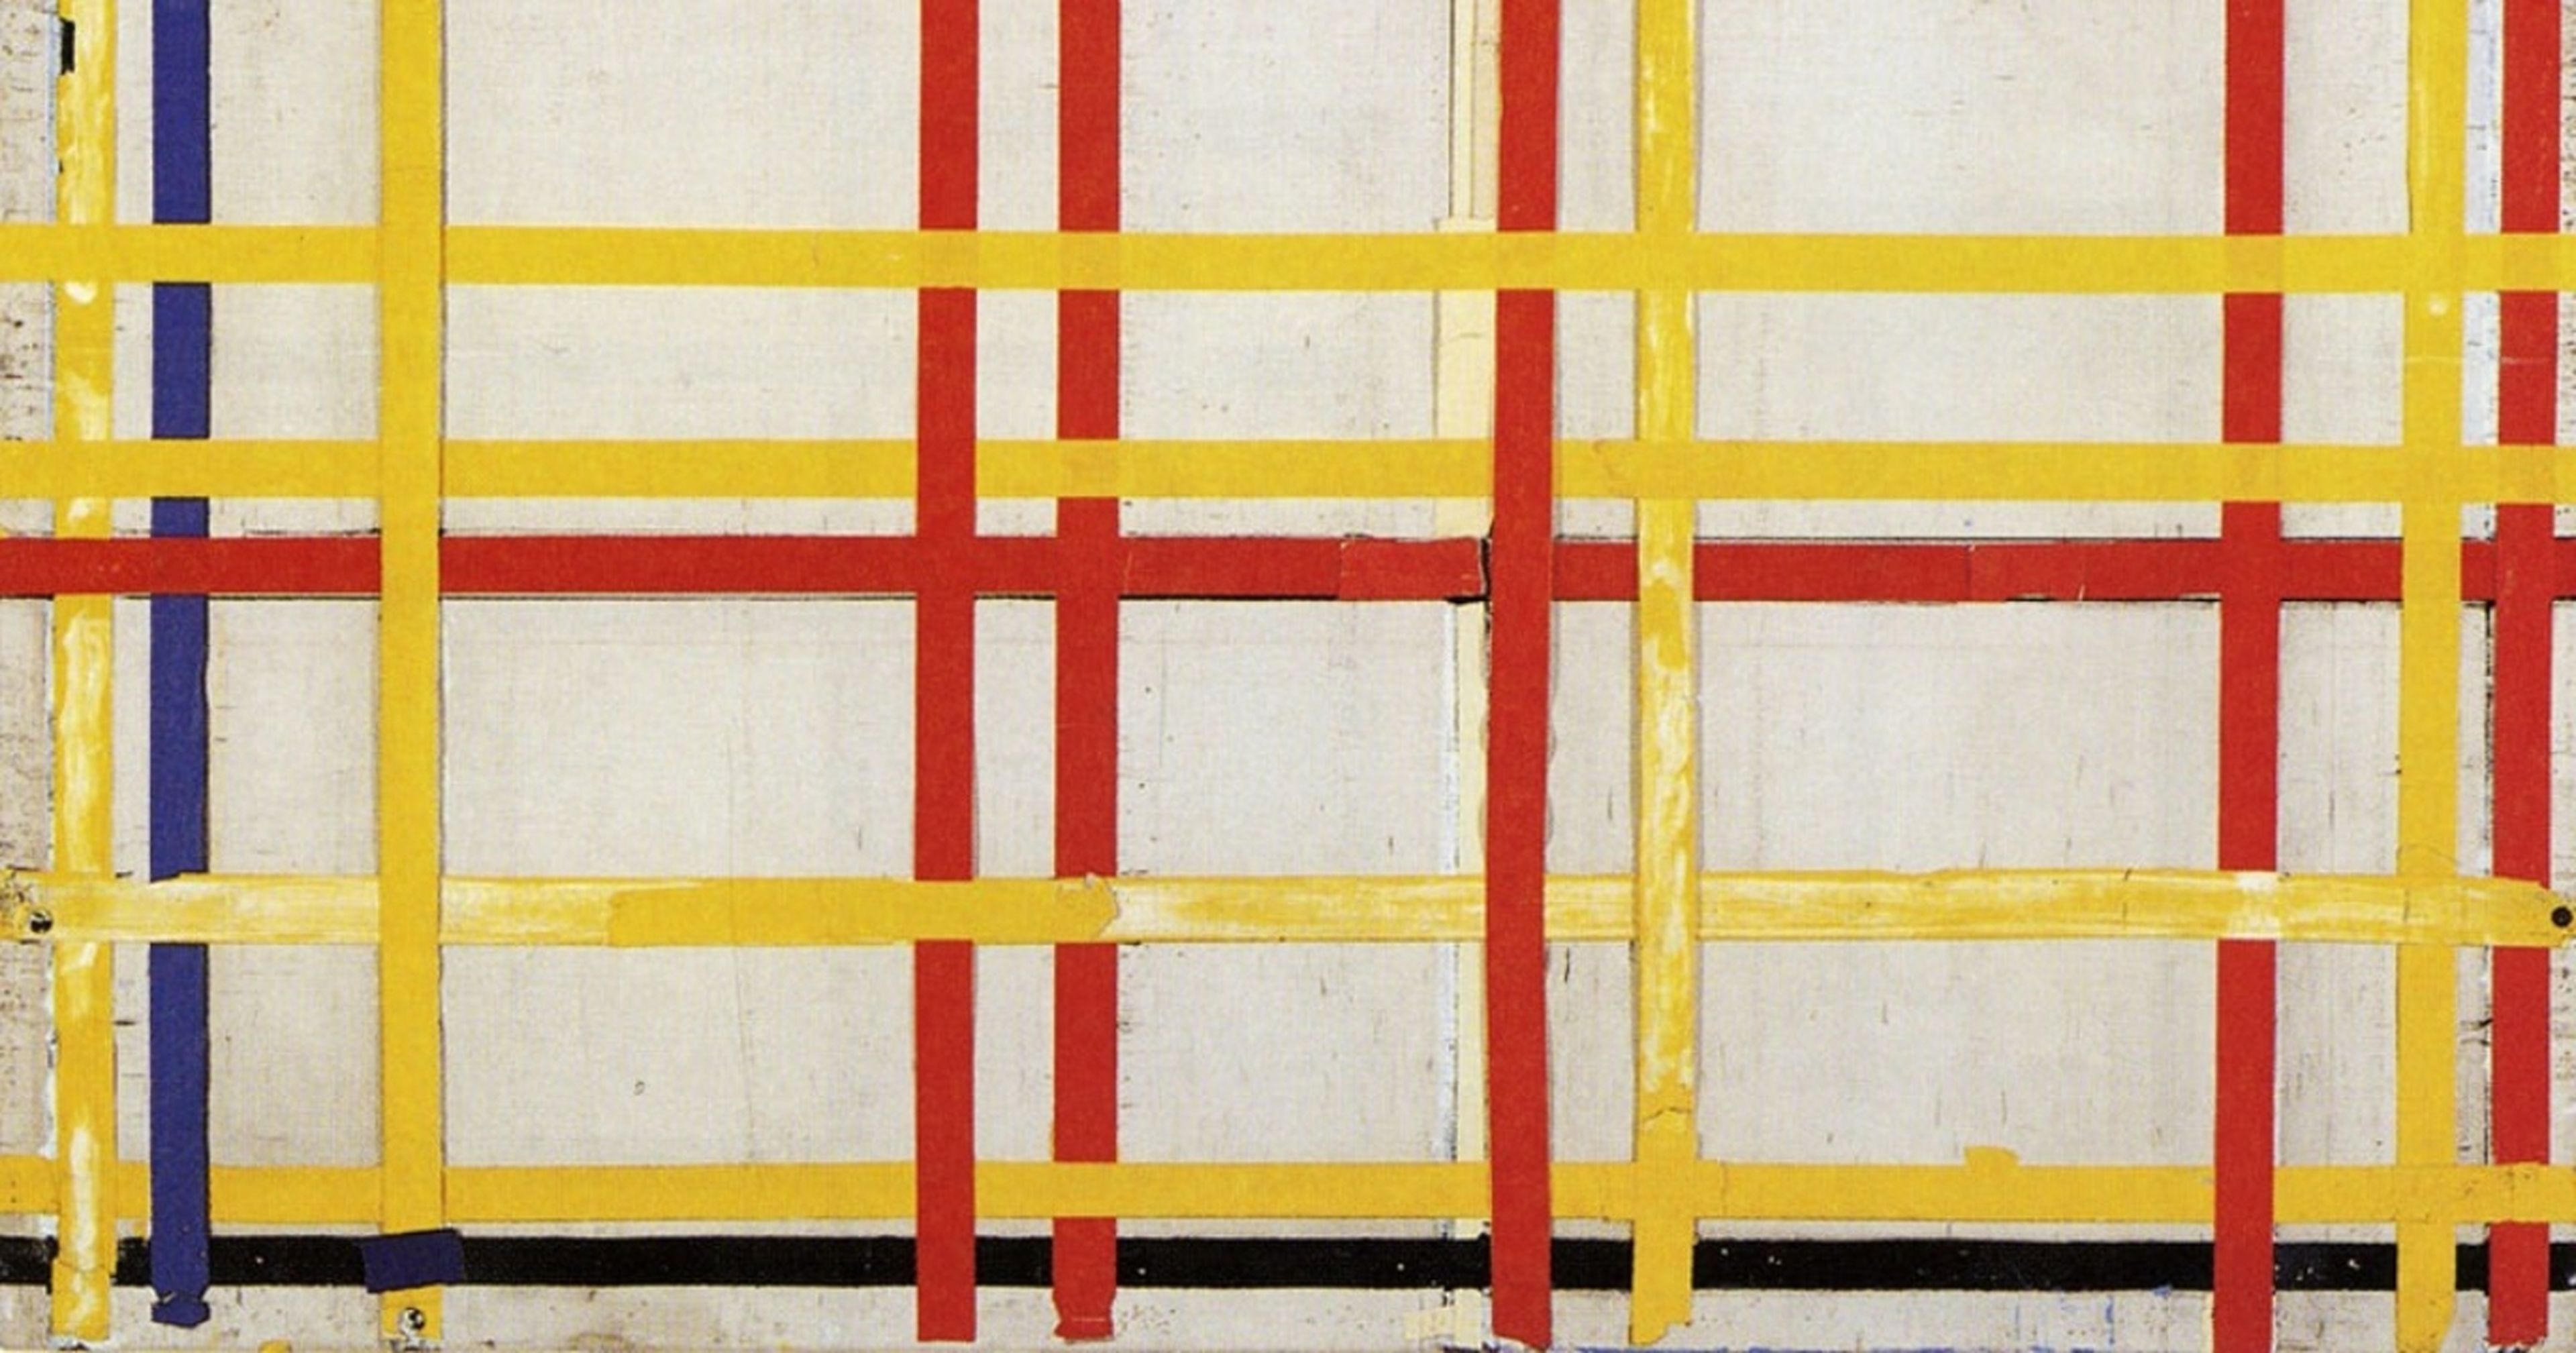 Descubre que un famoso cuadro de Mondrian ha estado colgado al revés durante 75 años